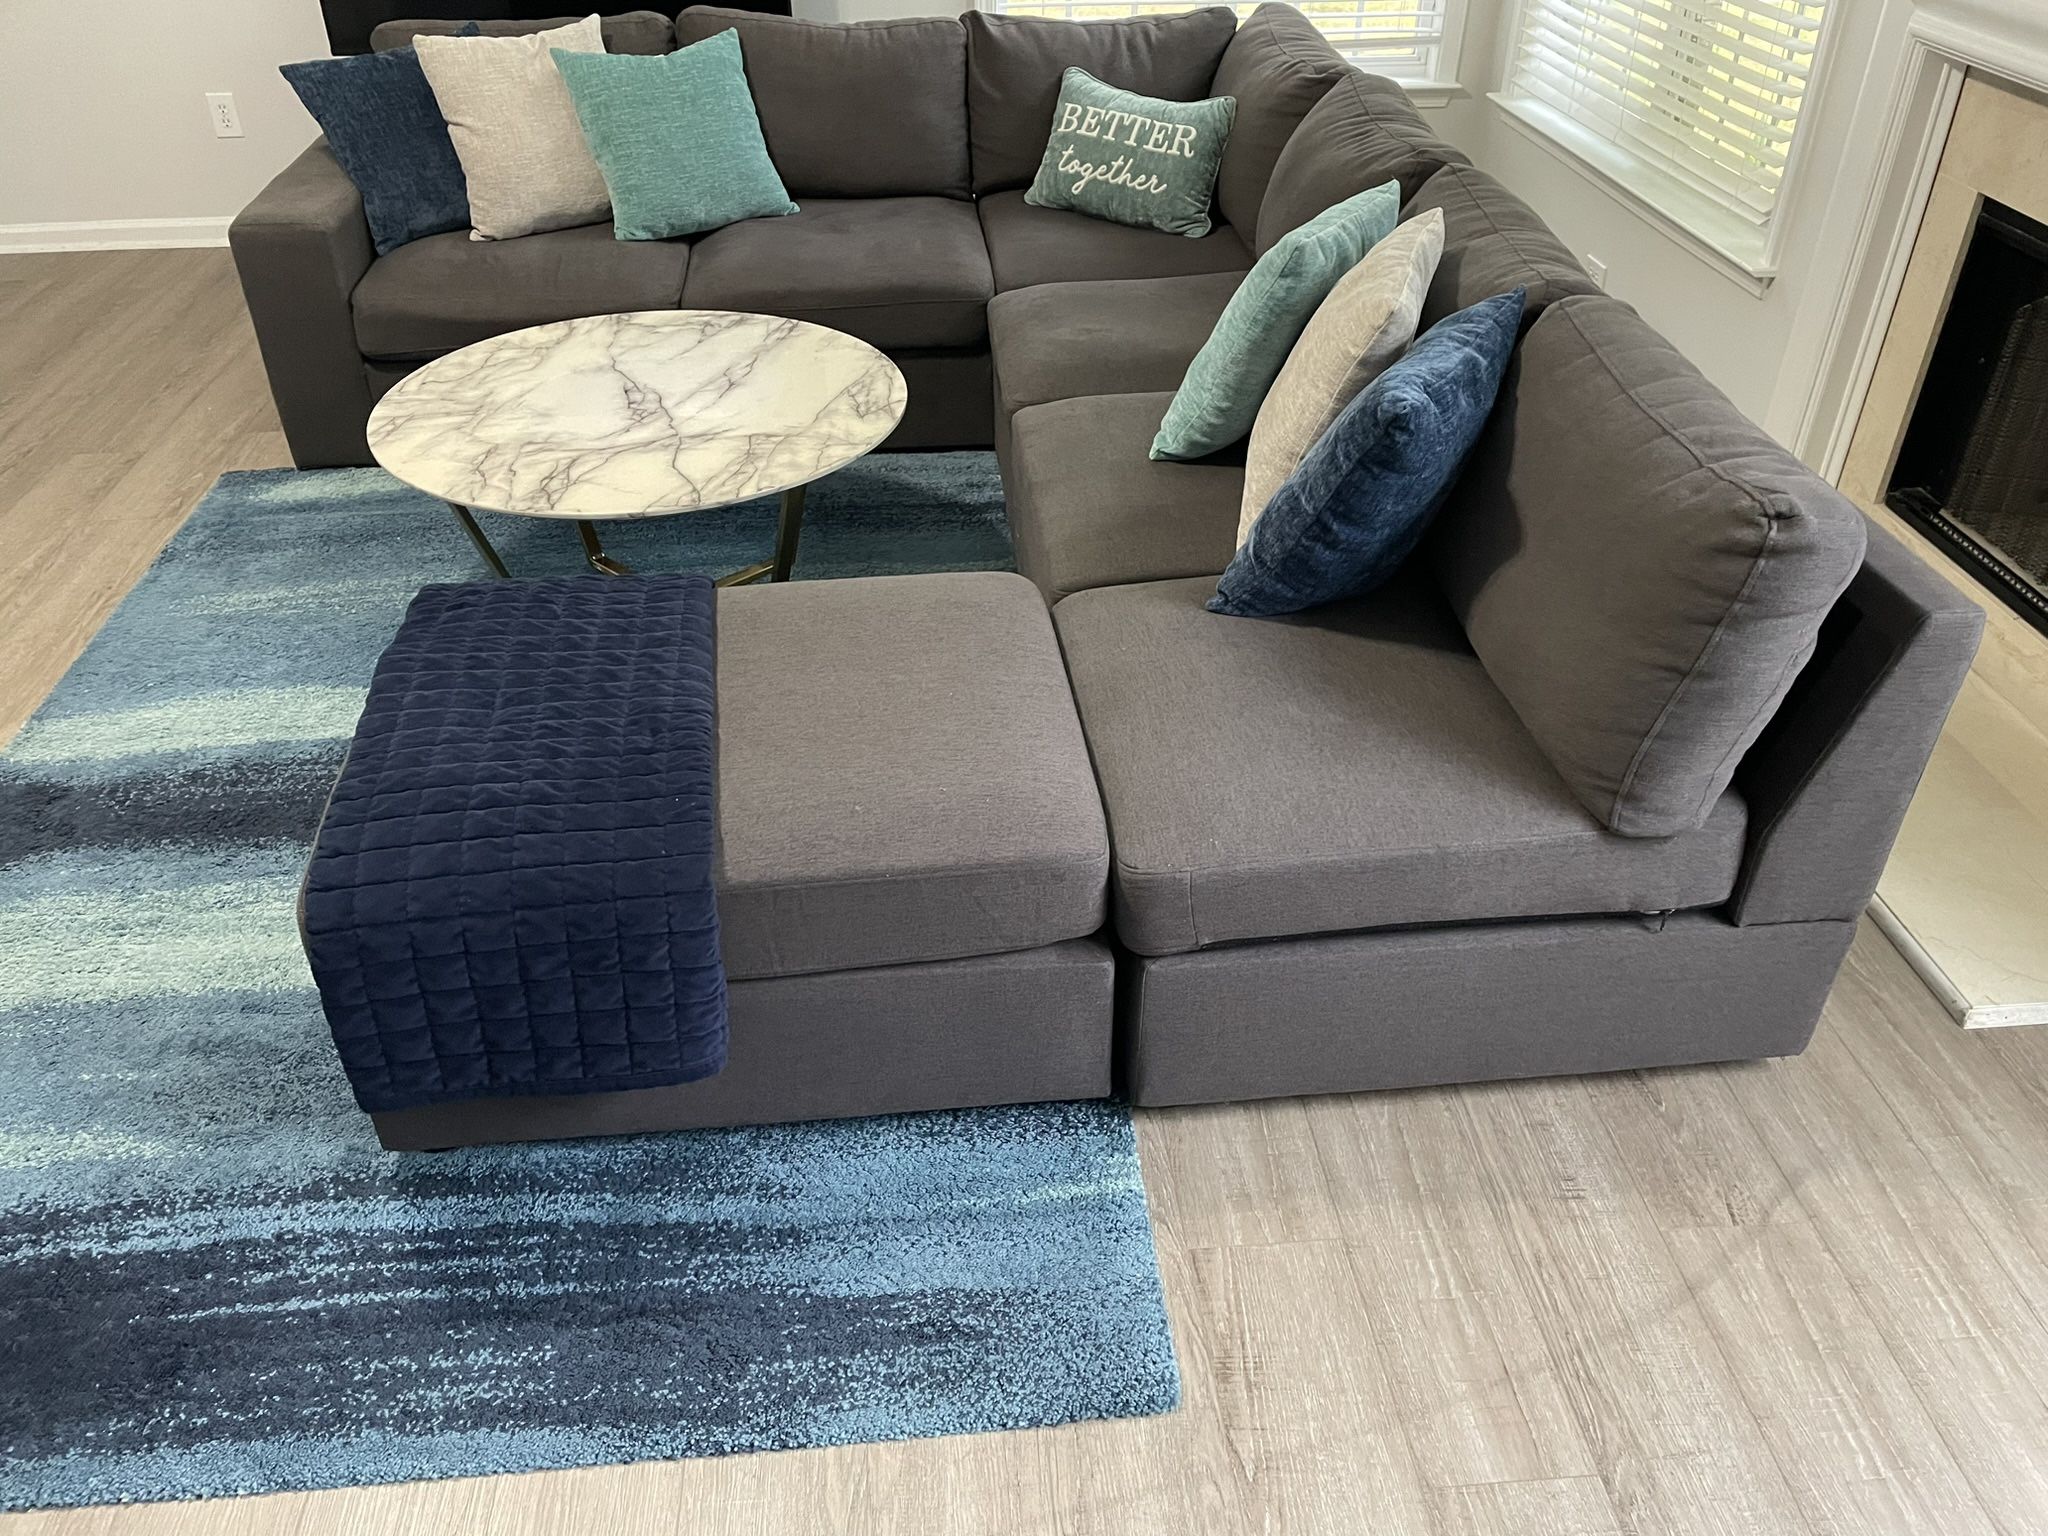 Wayfair Sectional Sofa 